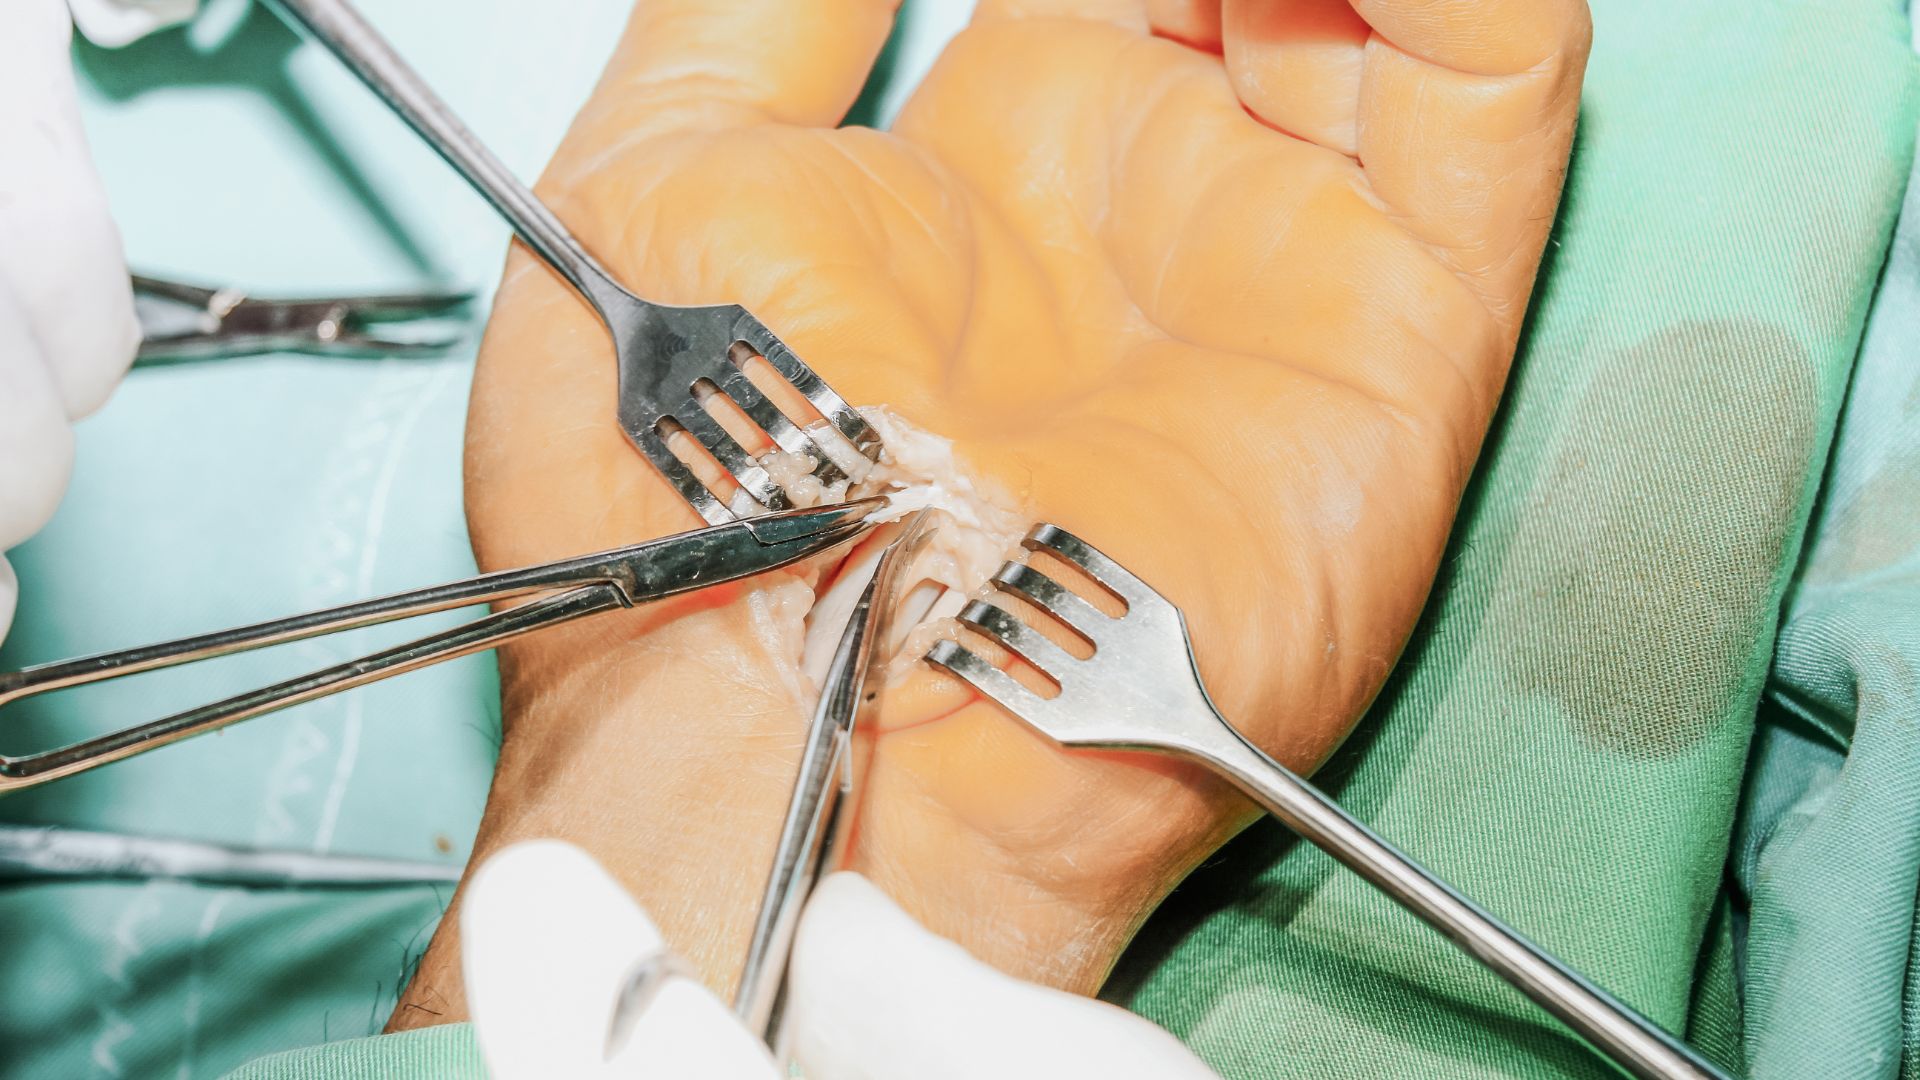 Tak operowany jest zespół cieśni nadgarstka. Chirurdzy wykonali nacięcie od wewnętrznej strony dłoni i rozpoczynają eliminowanie dolegliwości.